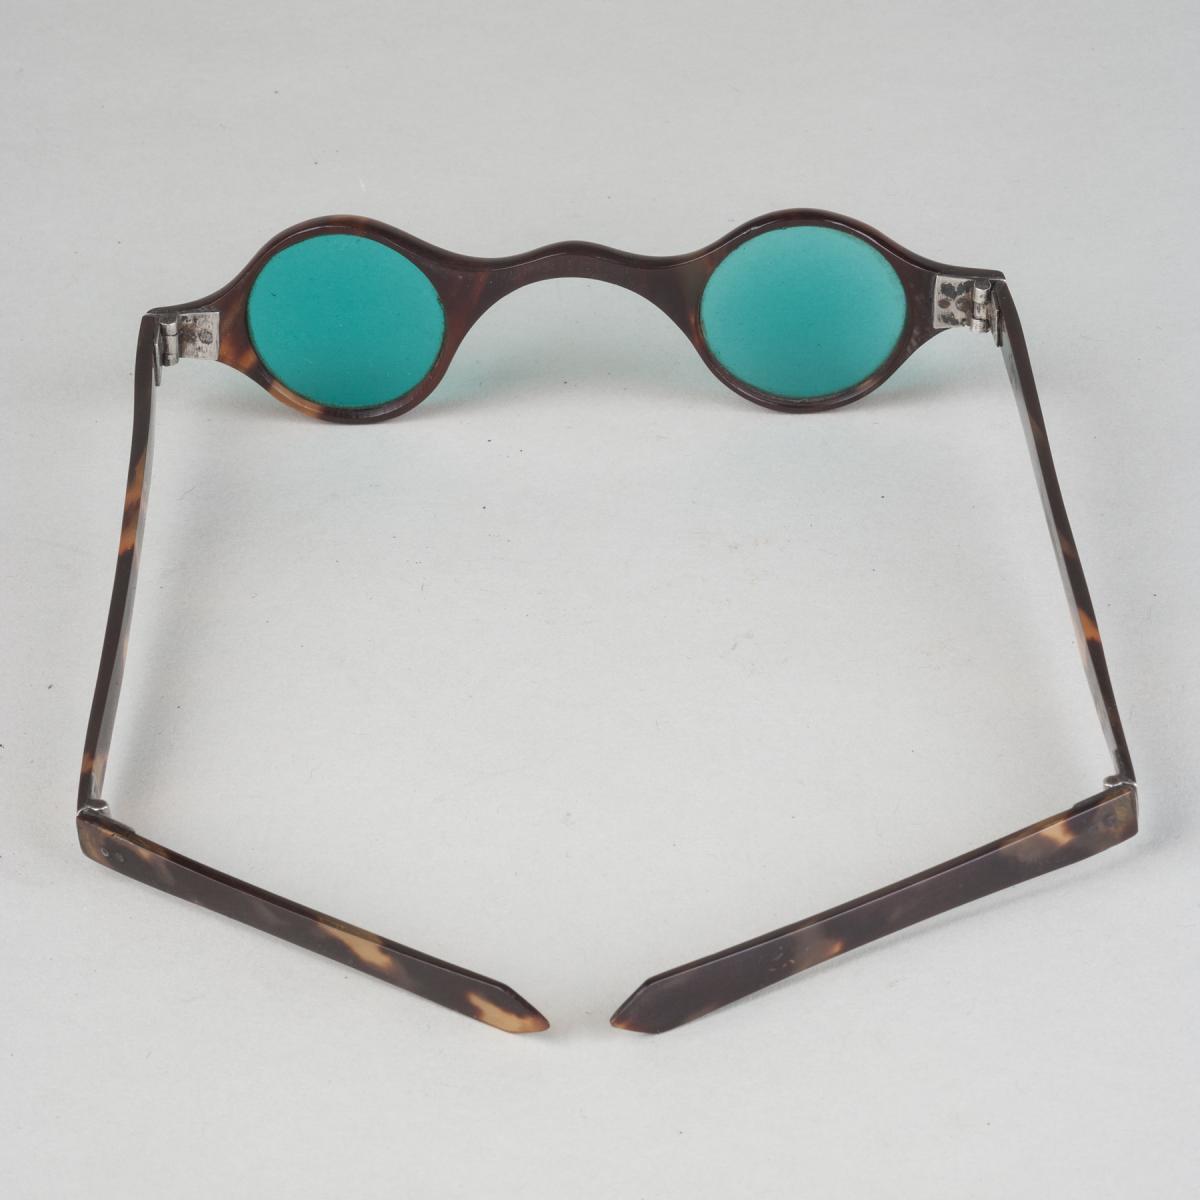 Tortoiseshell Framed Sunglasses